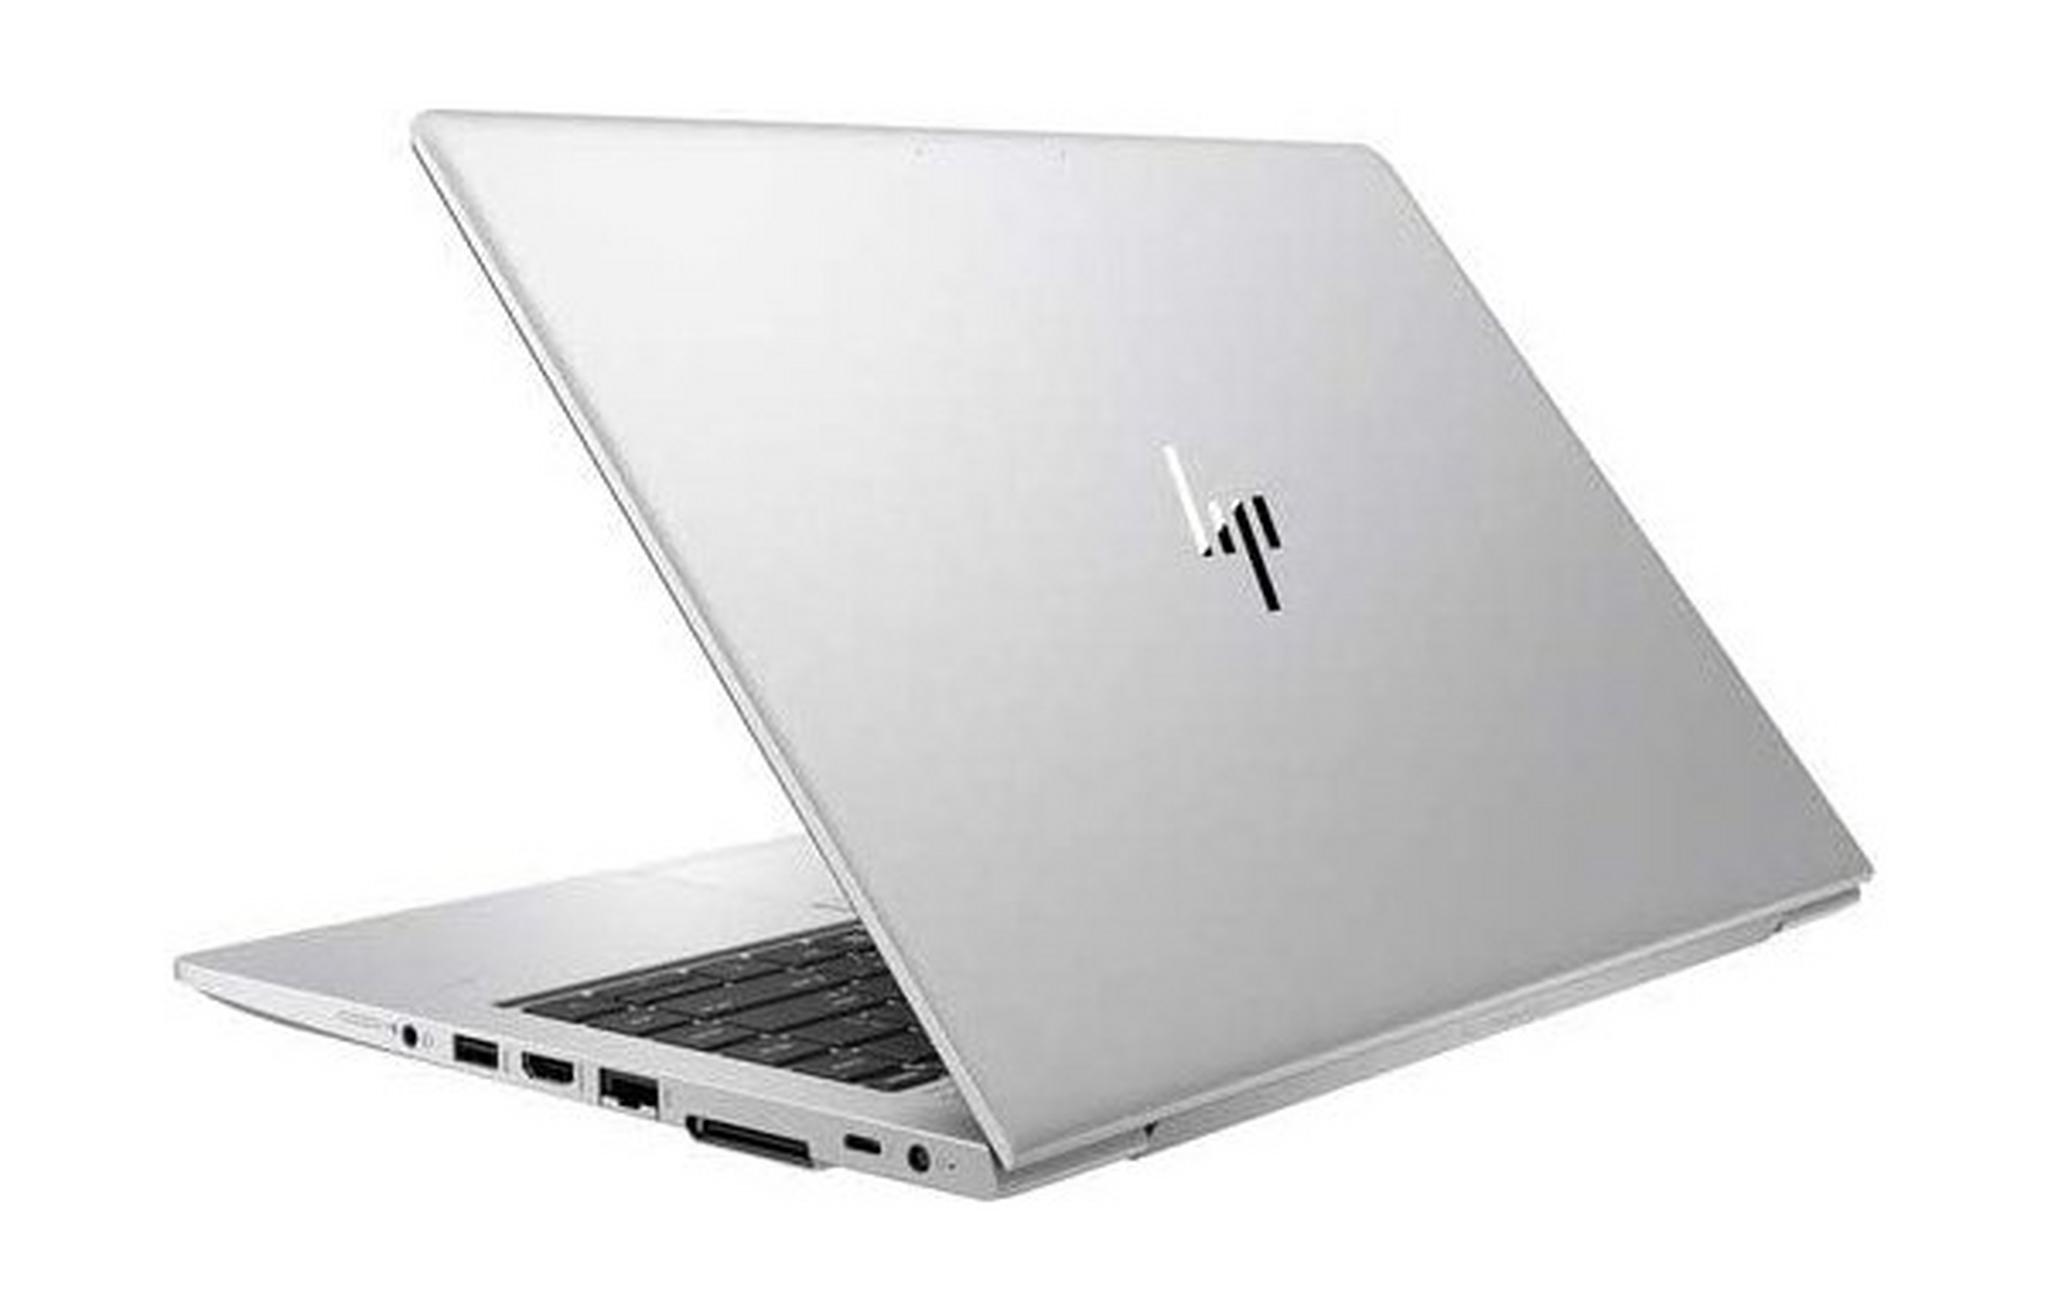 HP Elitebook 850 Intel Core i7 8GB RAM 256GB SSD 15.6" Laptop (177D4EA) - Silver